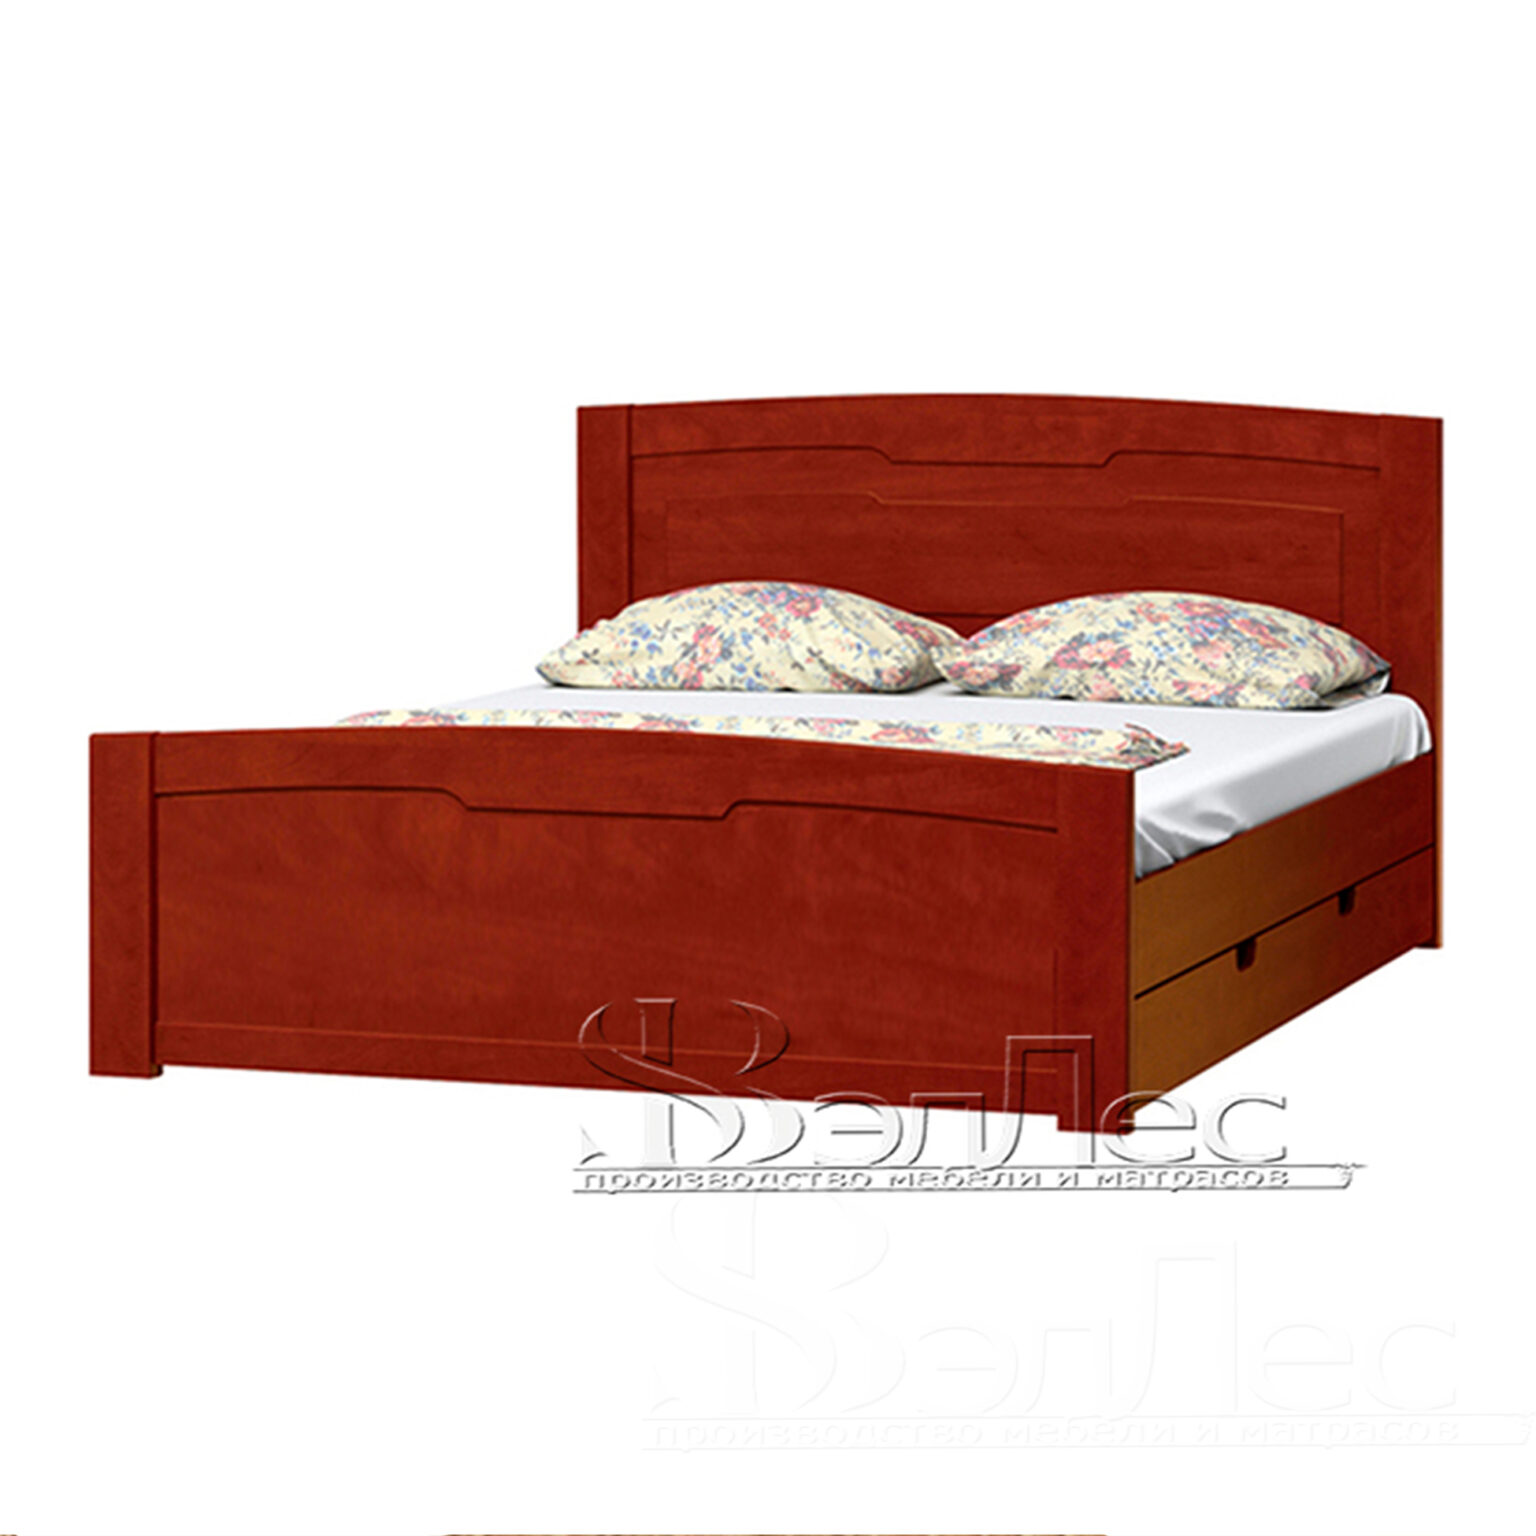 Ариэль-2 кровать